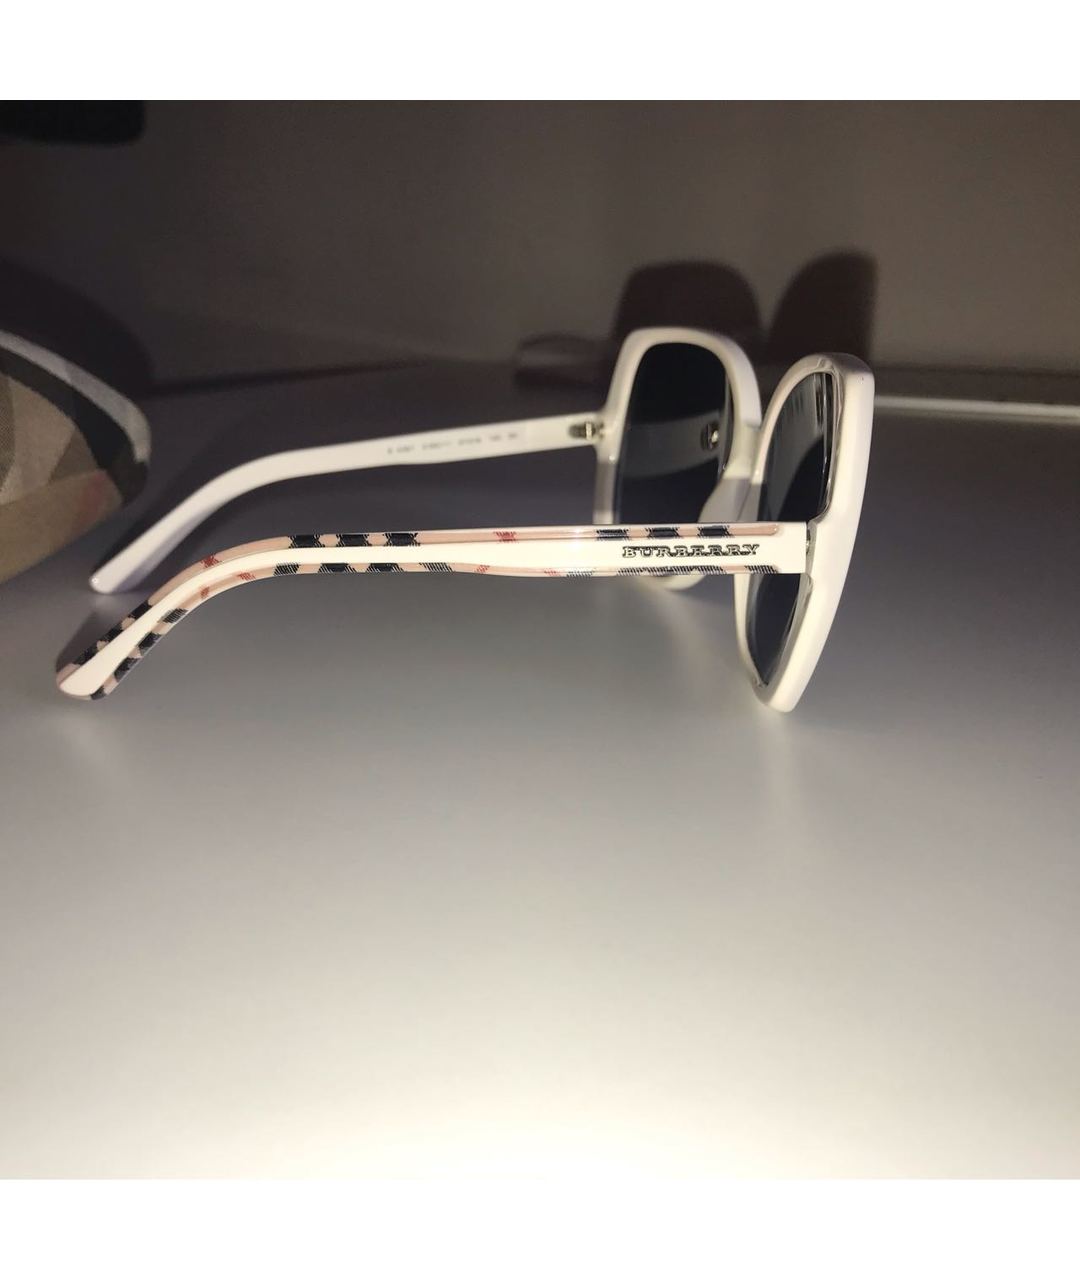 BURBERRY Белые пластиковые солнцезащитные очки, фото 3